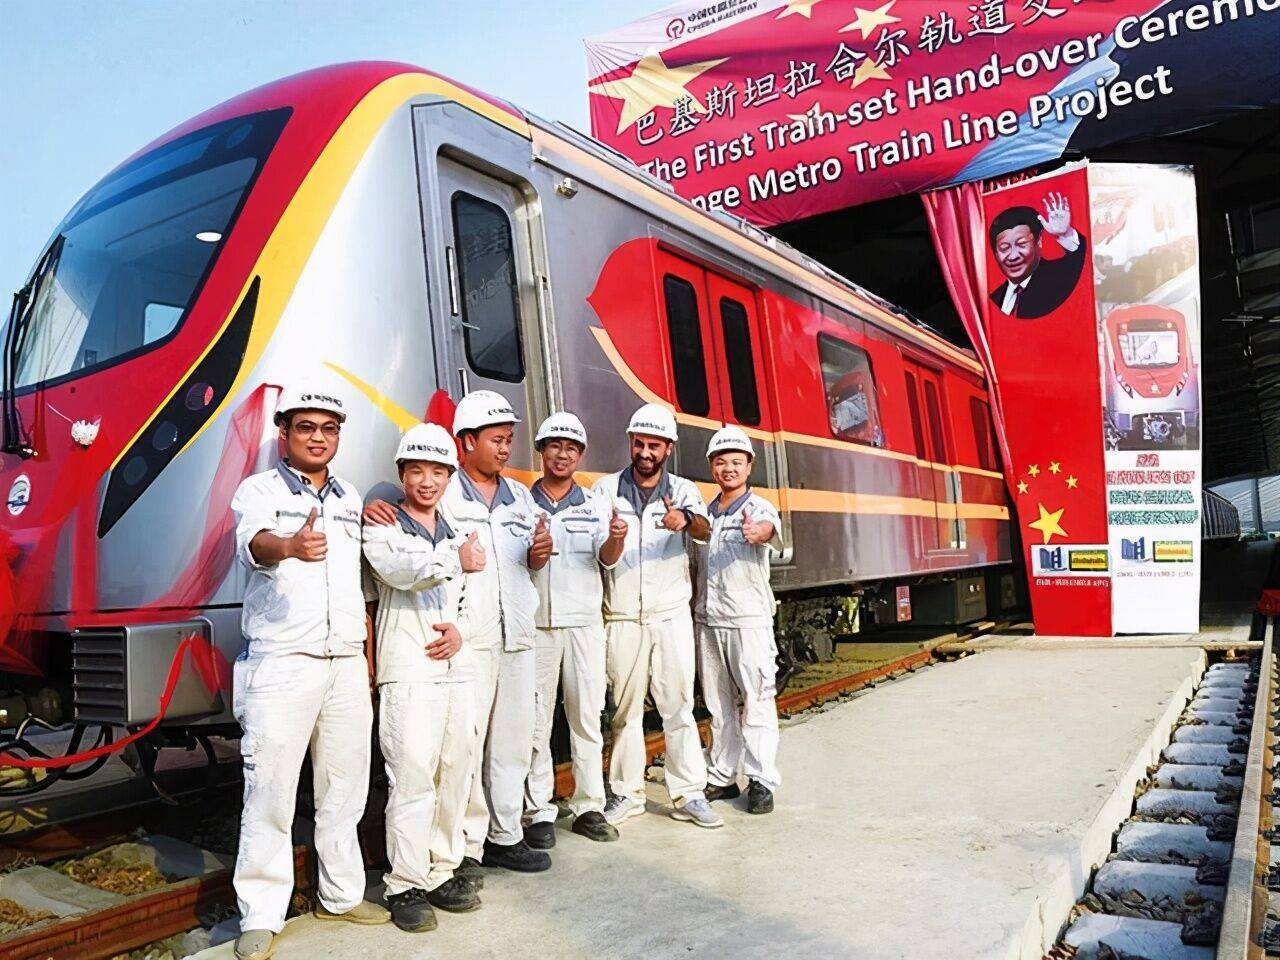 中国造的巴基斯坦地铁,深深刺痛了印度人!